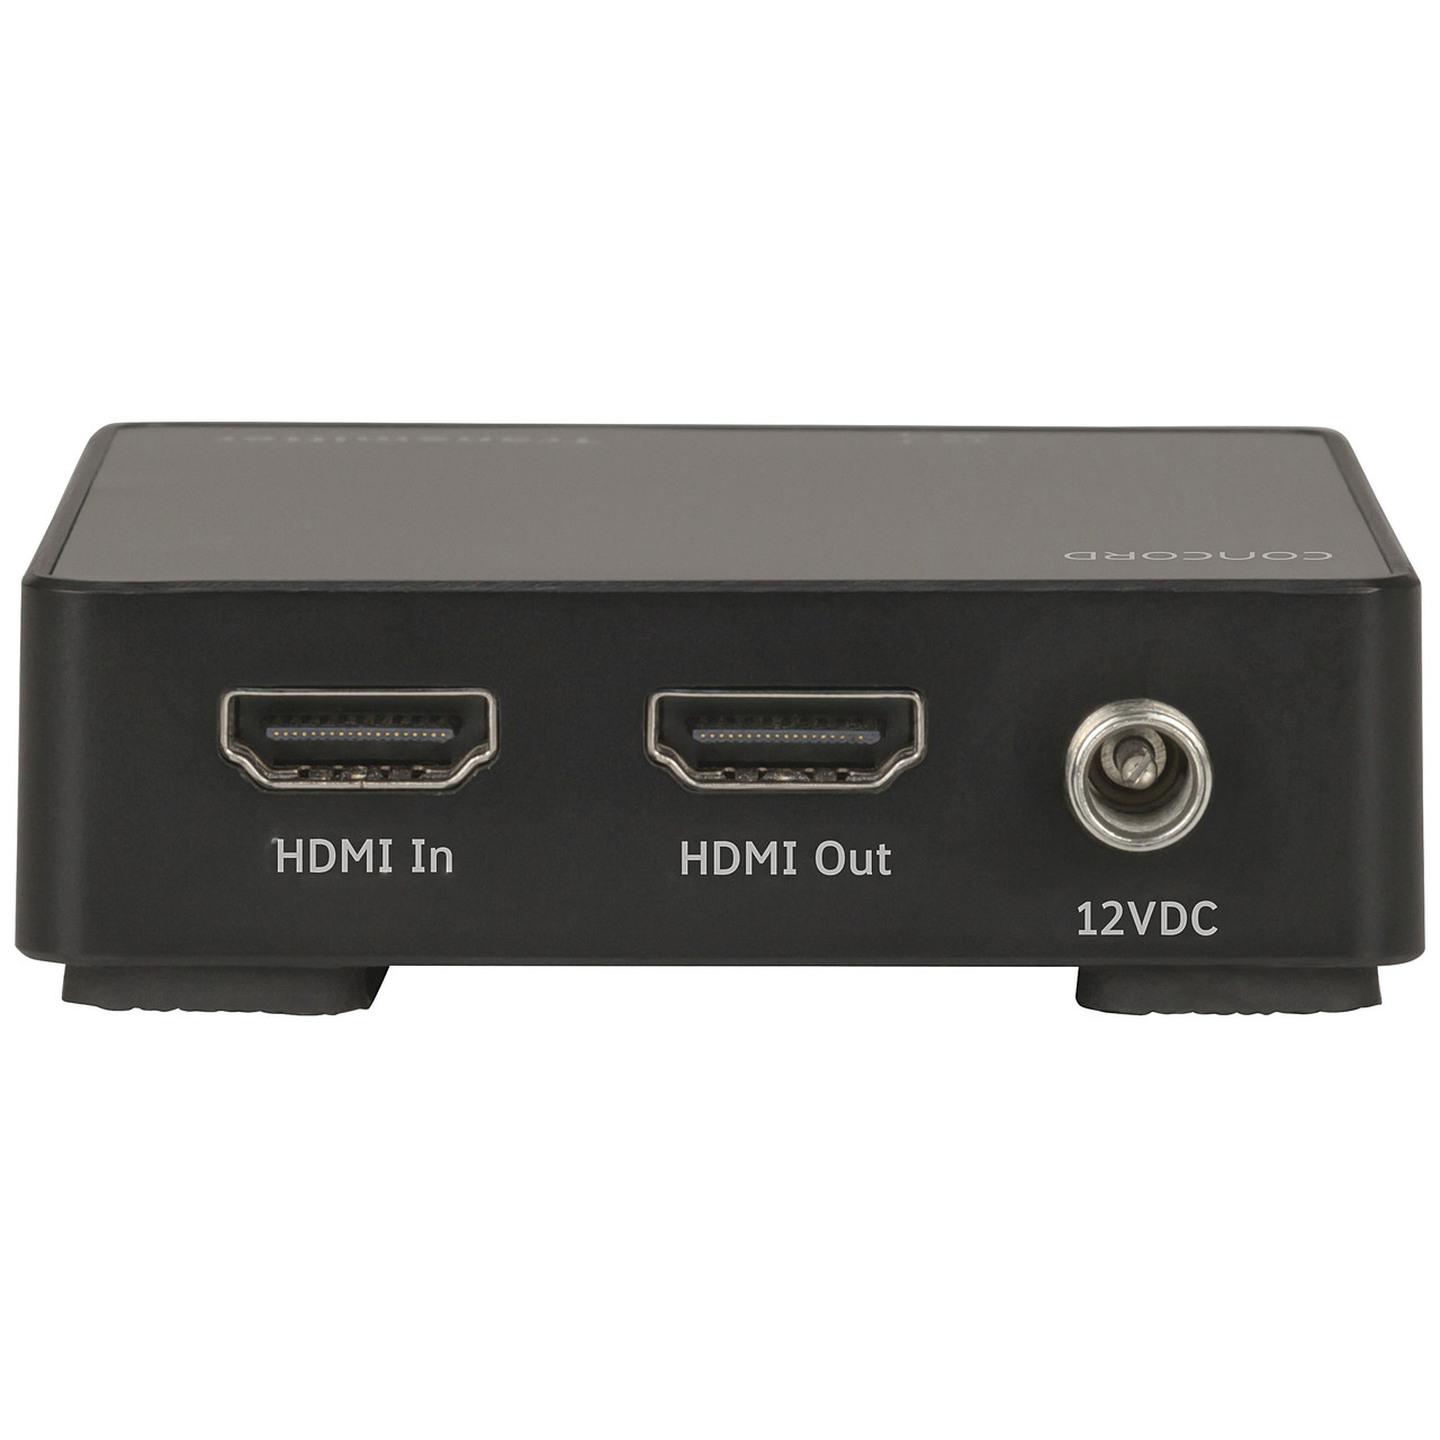 Concord 4K HDMI Cat5e/6 Extender